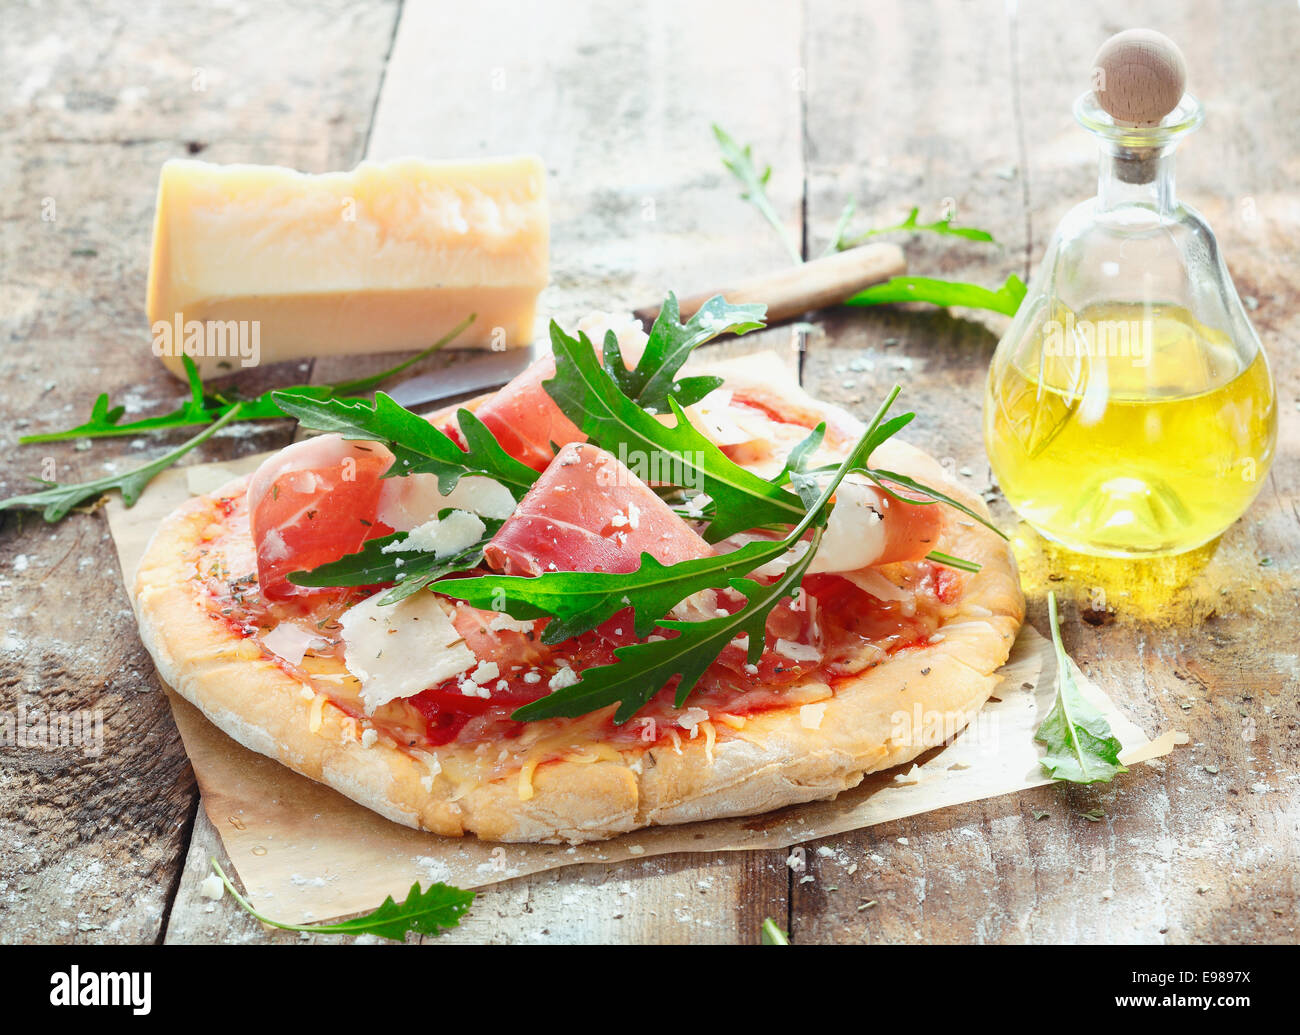 Vorbereitung hausgemachten Schinken Pizza mit frischen Zutaten einschließlich dünn geschnittenen Schinken, Käse, Kräuter und Tomaten Stockfoto